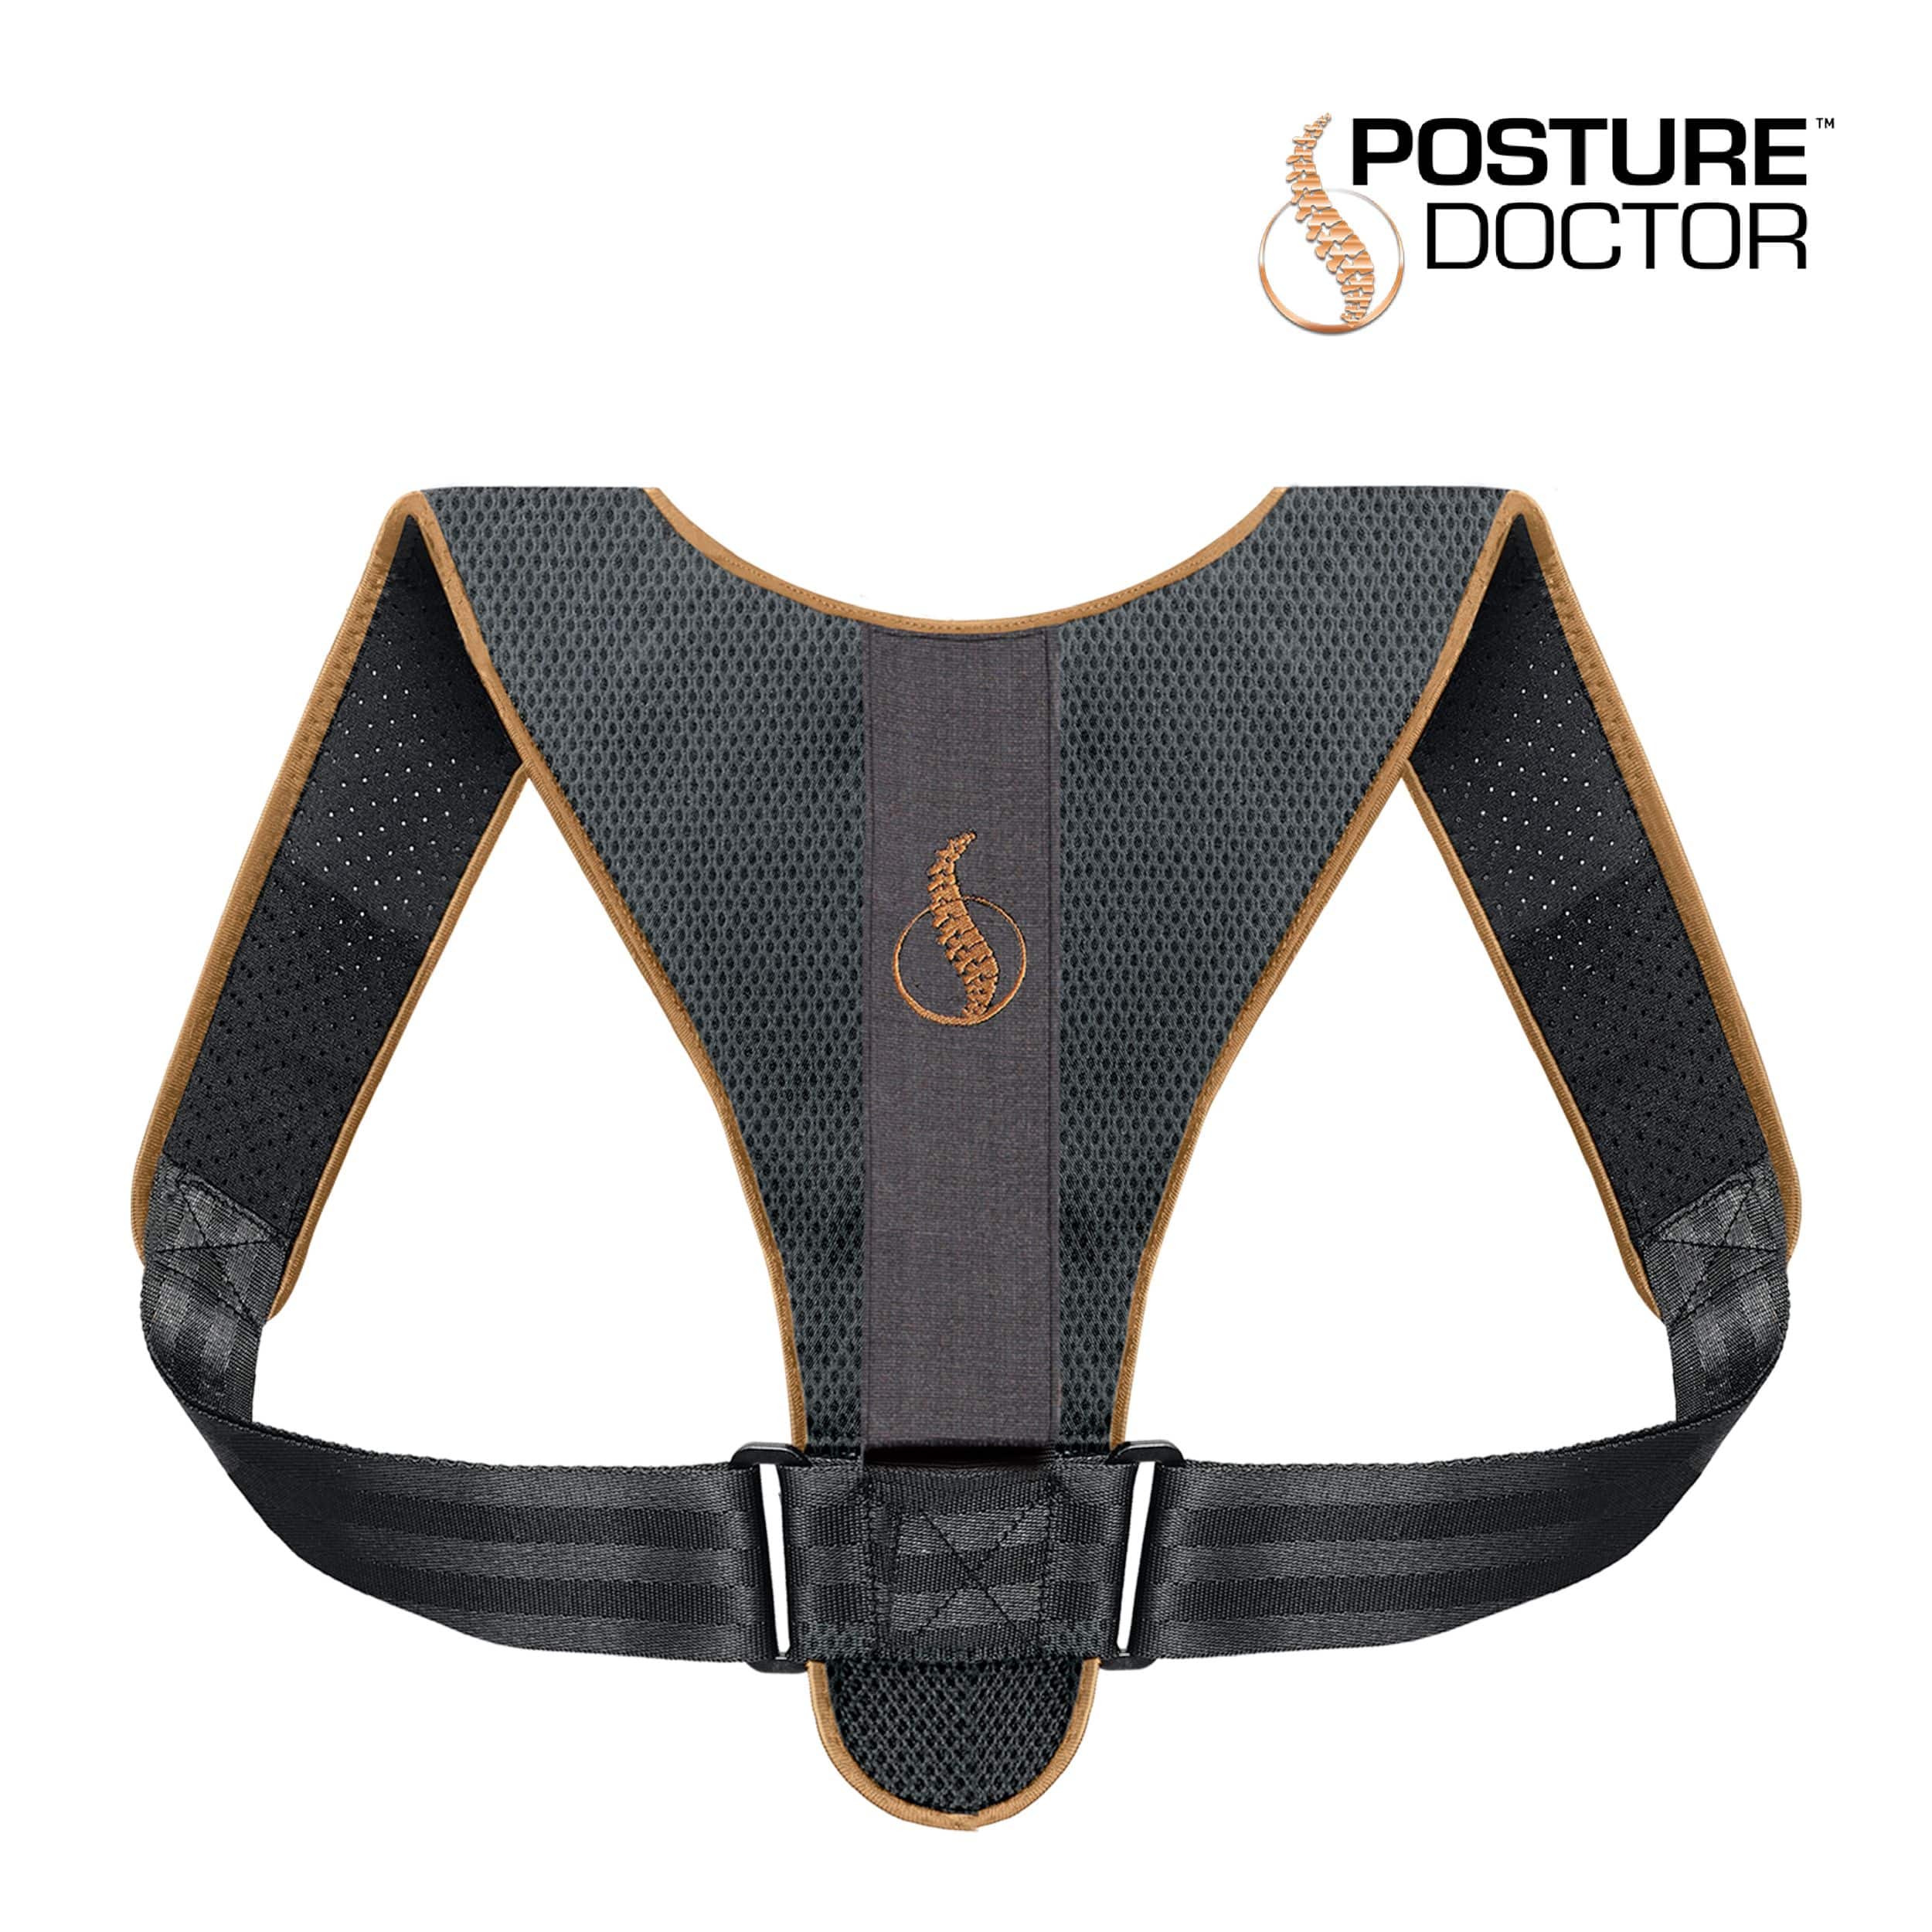 Tensor Posture Corrector Adjustable Back Support, Black, One Size